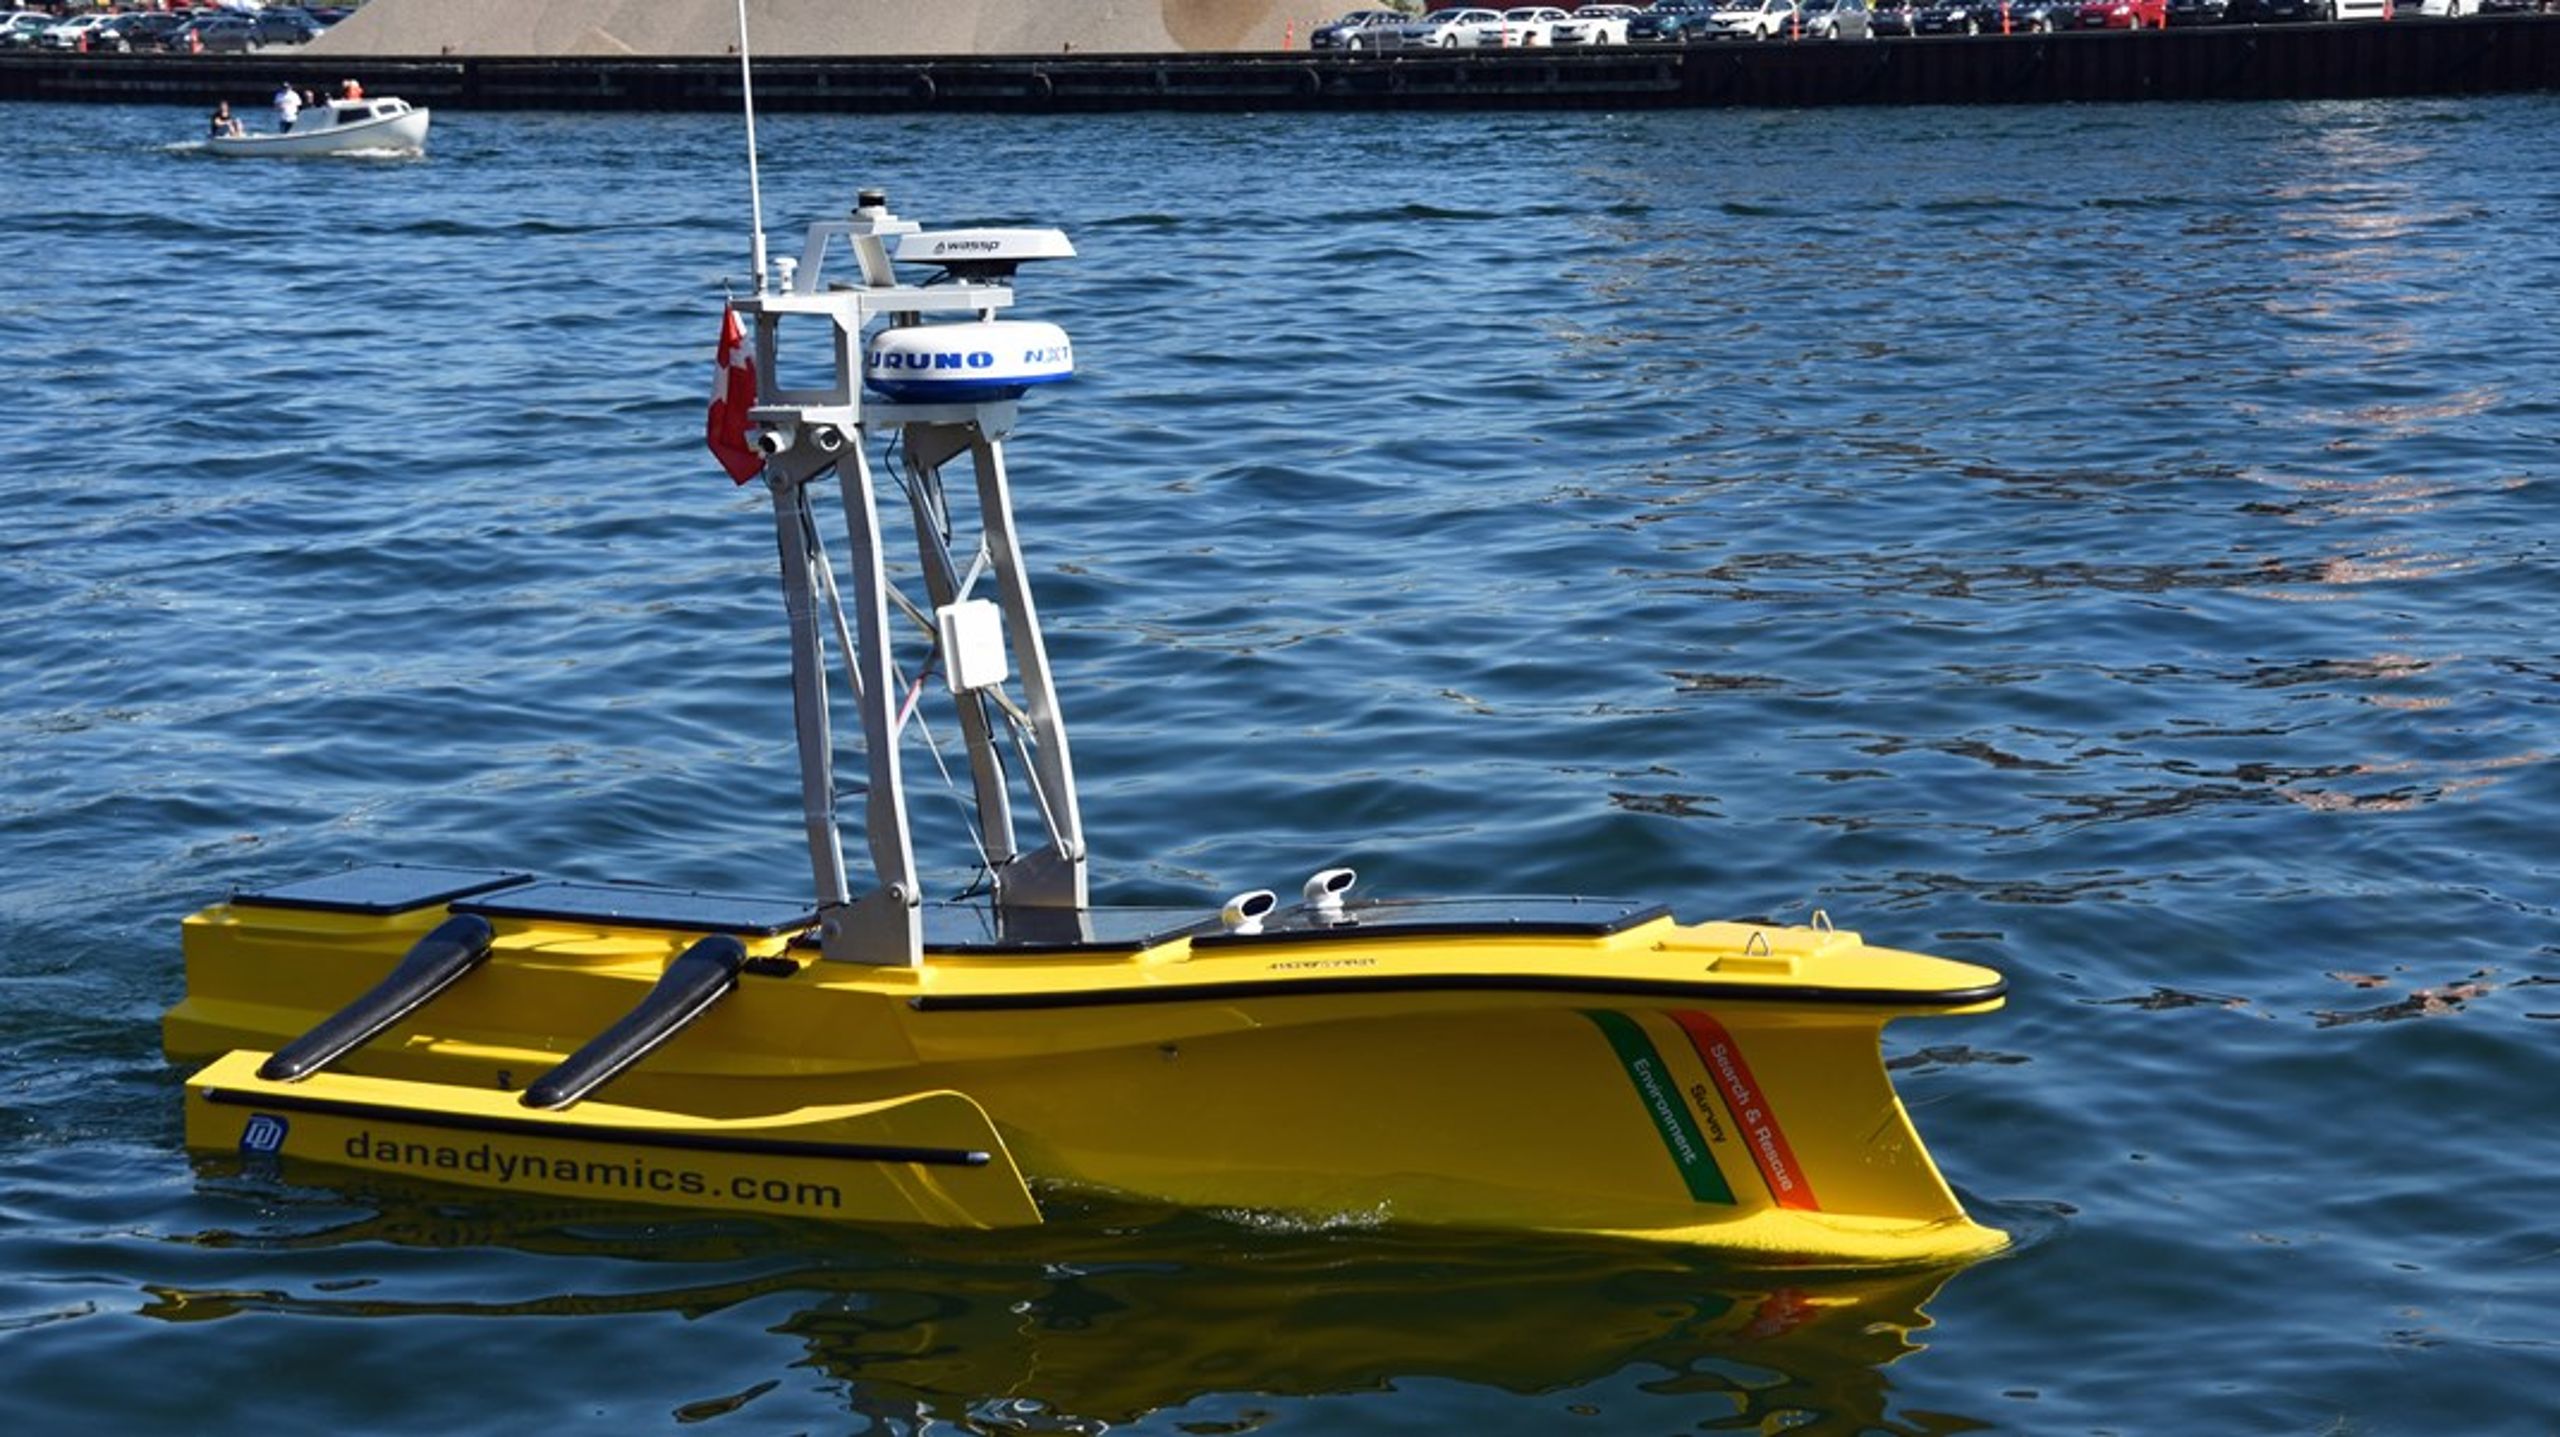 Svendborg-virksomheden DanaDynamics har en udviklet en 6 meter lang maritim drone til opmåling og indsamling af miljødata.